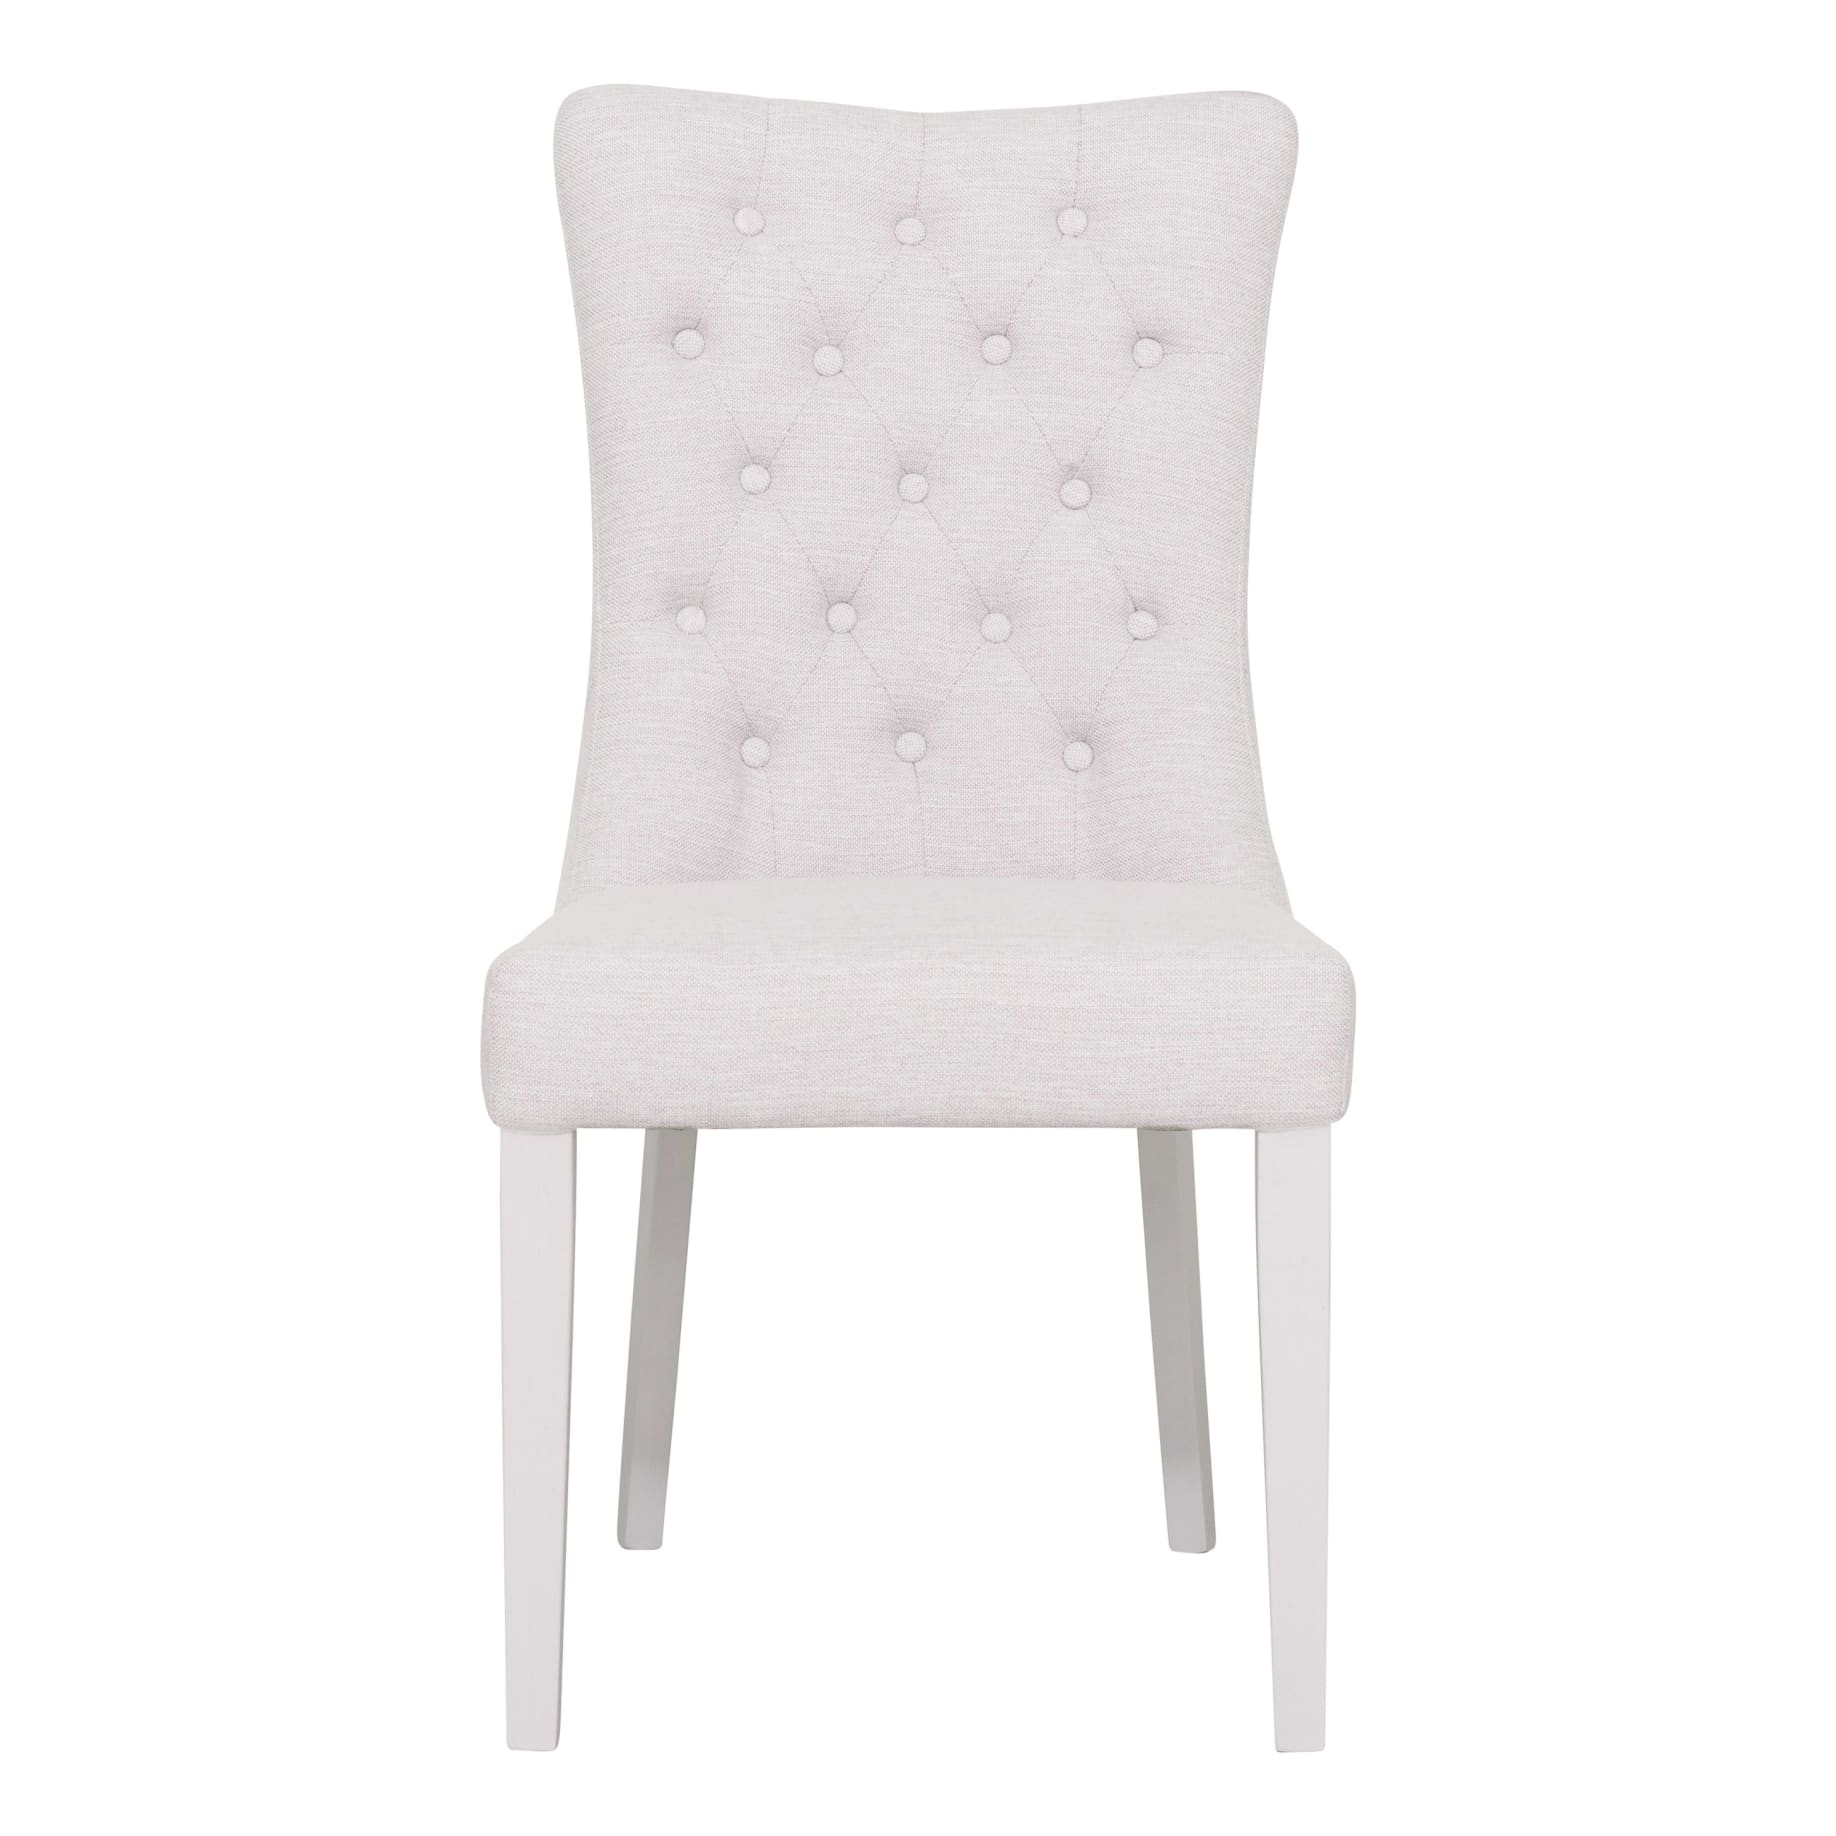 Xavier Dining Chair in Beige/White Leg